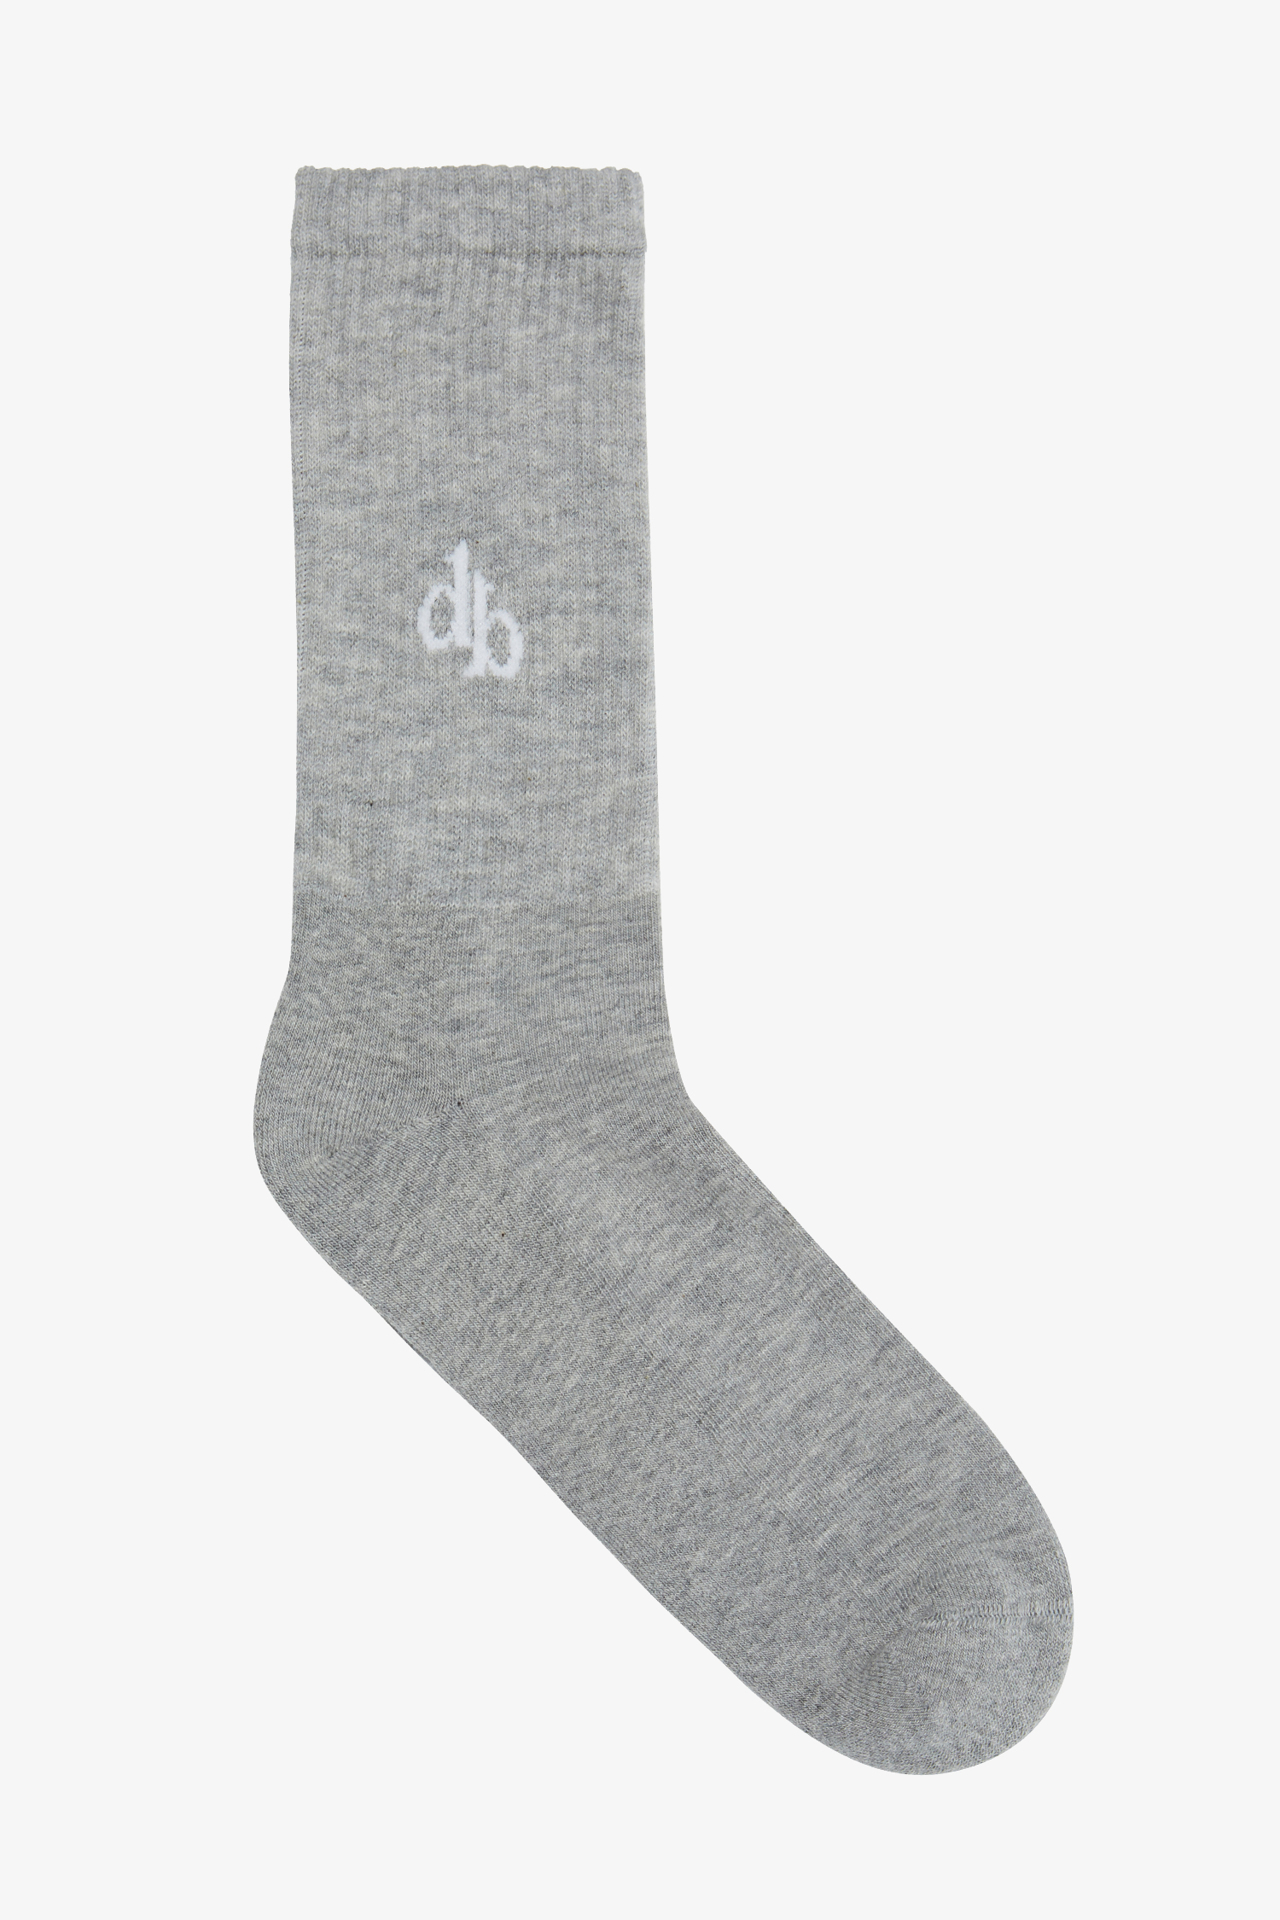 Dahlia Bianca | Fossil - Gri - Socks